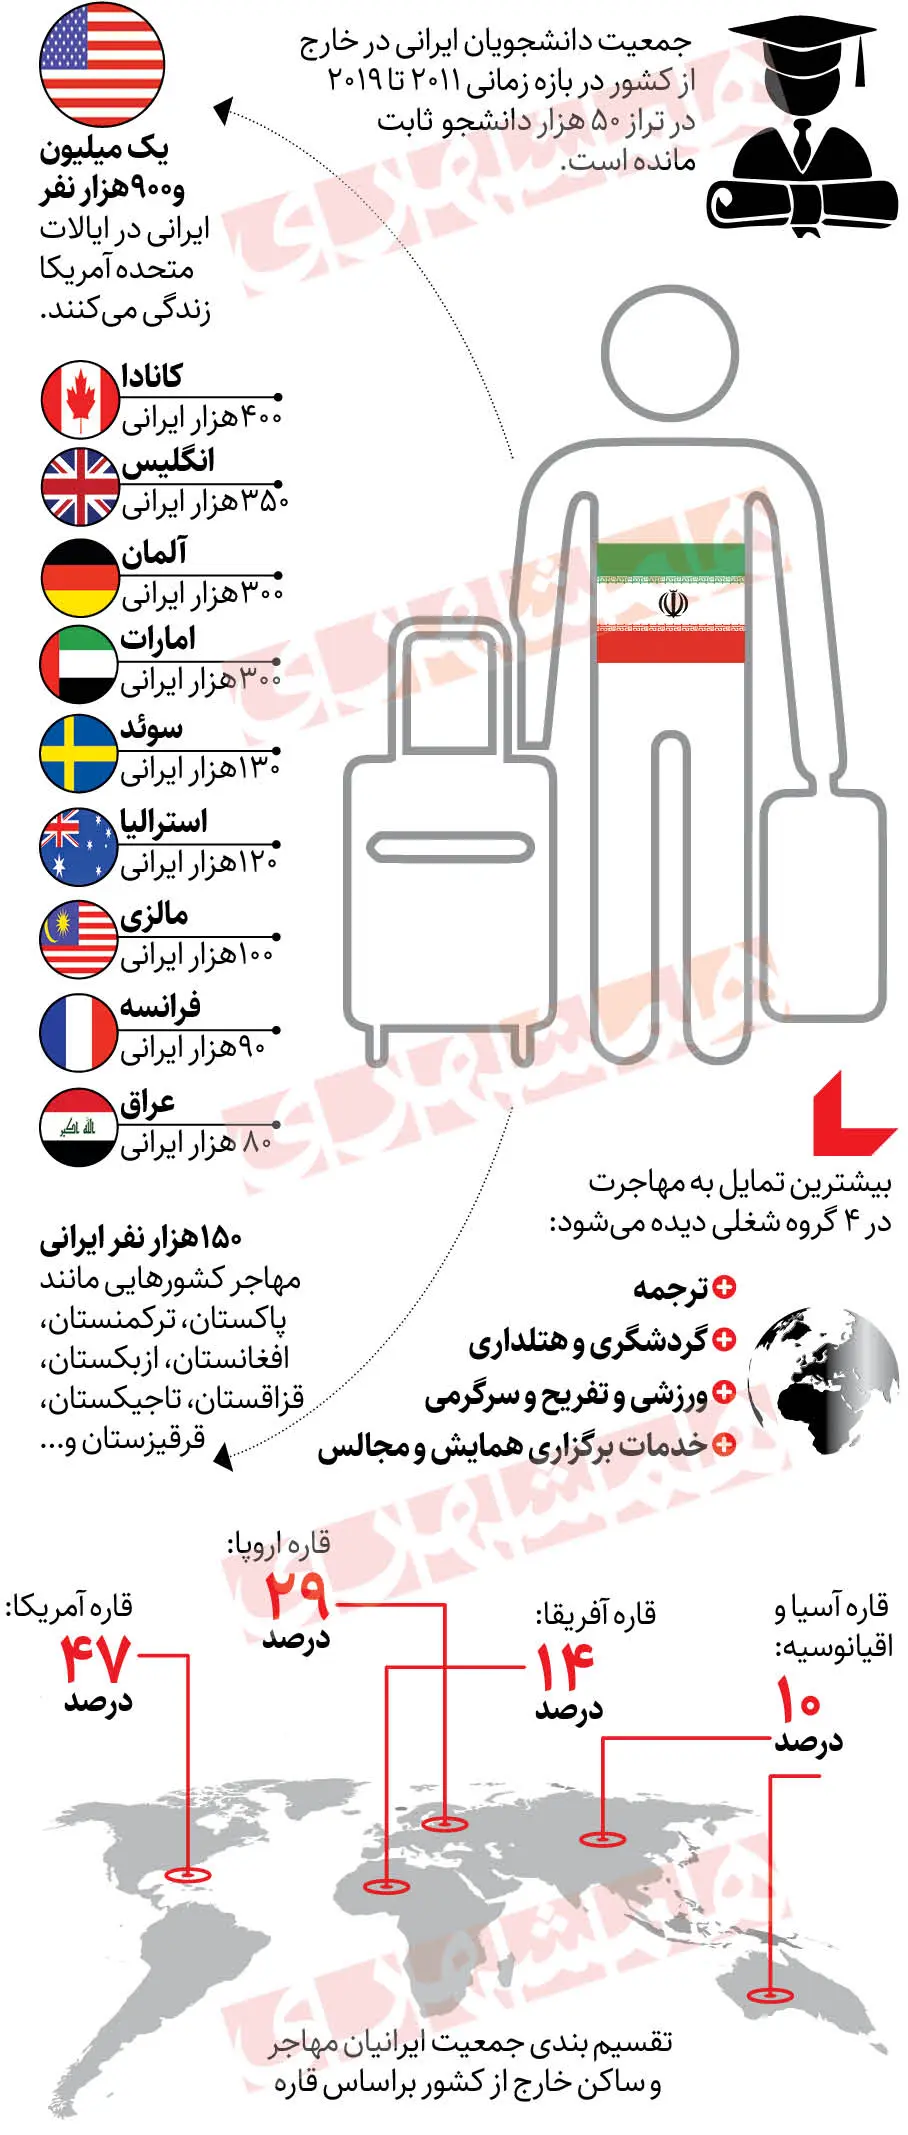 کشورهای مقصد ایرانیان برای مهاجرت